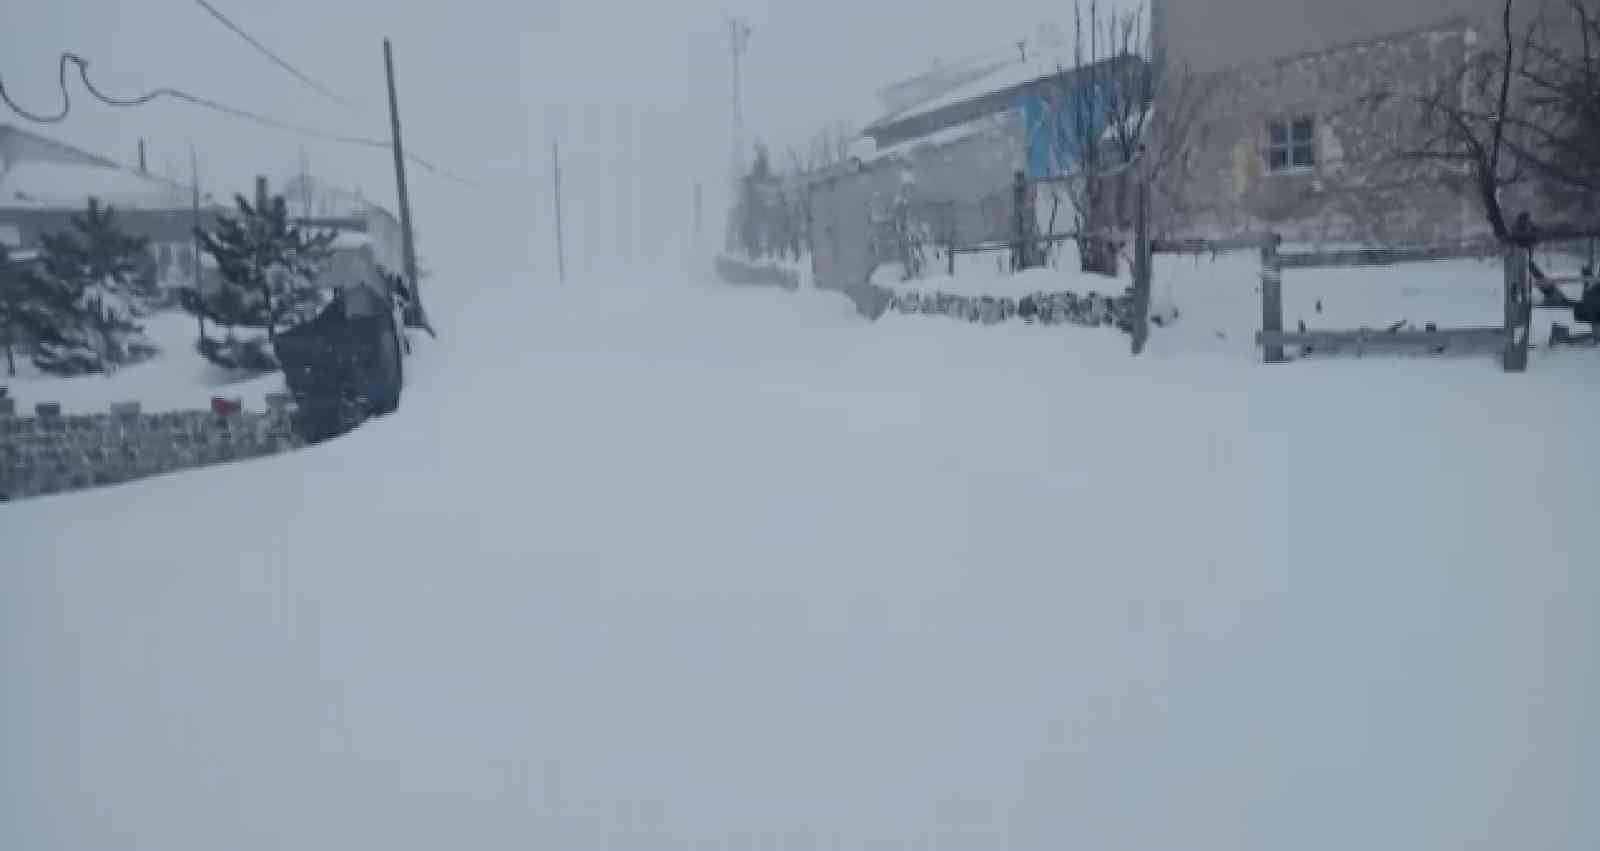 Develi ve Yahyalı’da yoğun kar ulaşımı aksattı #kayseri